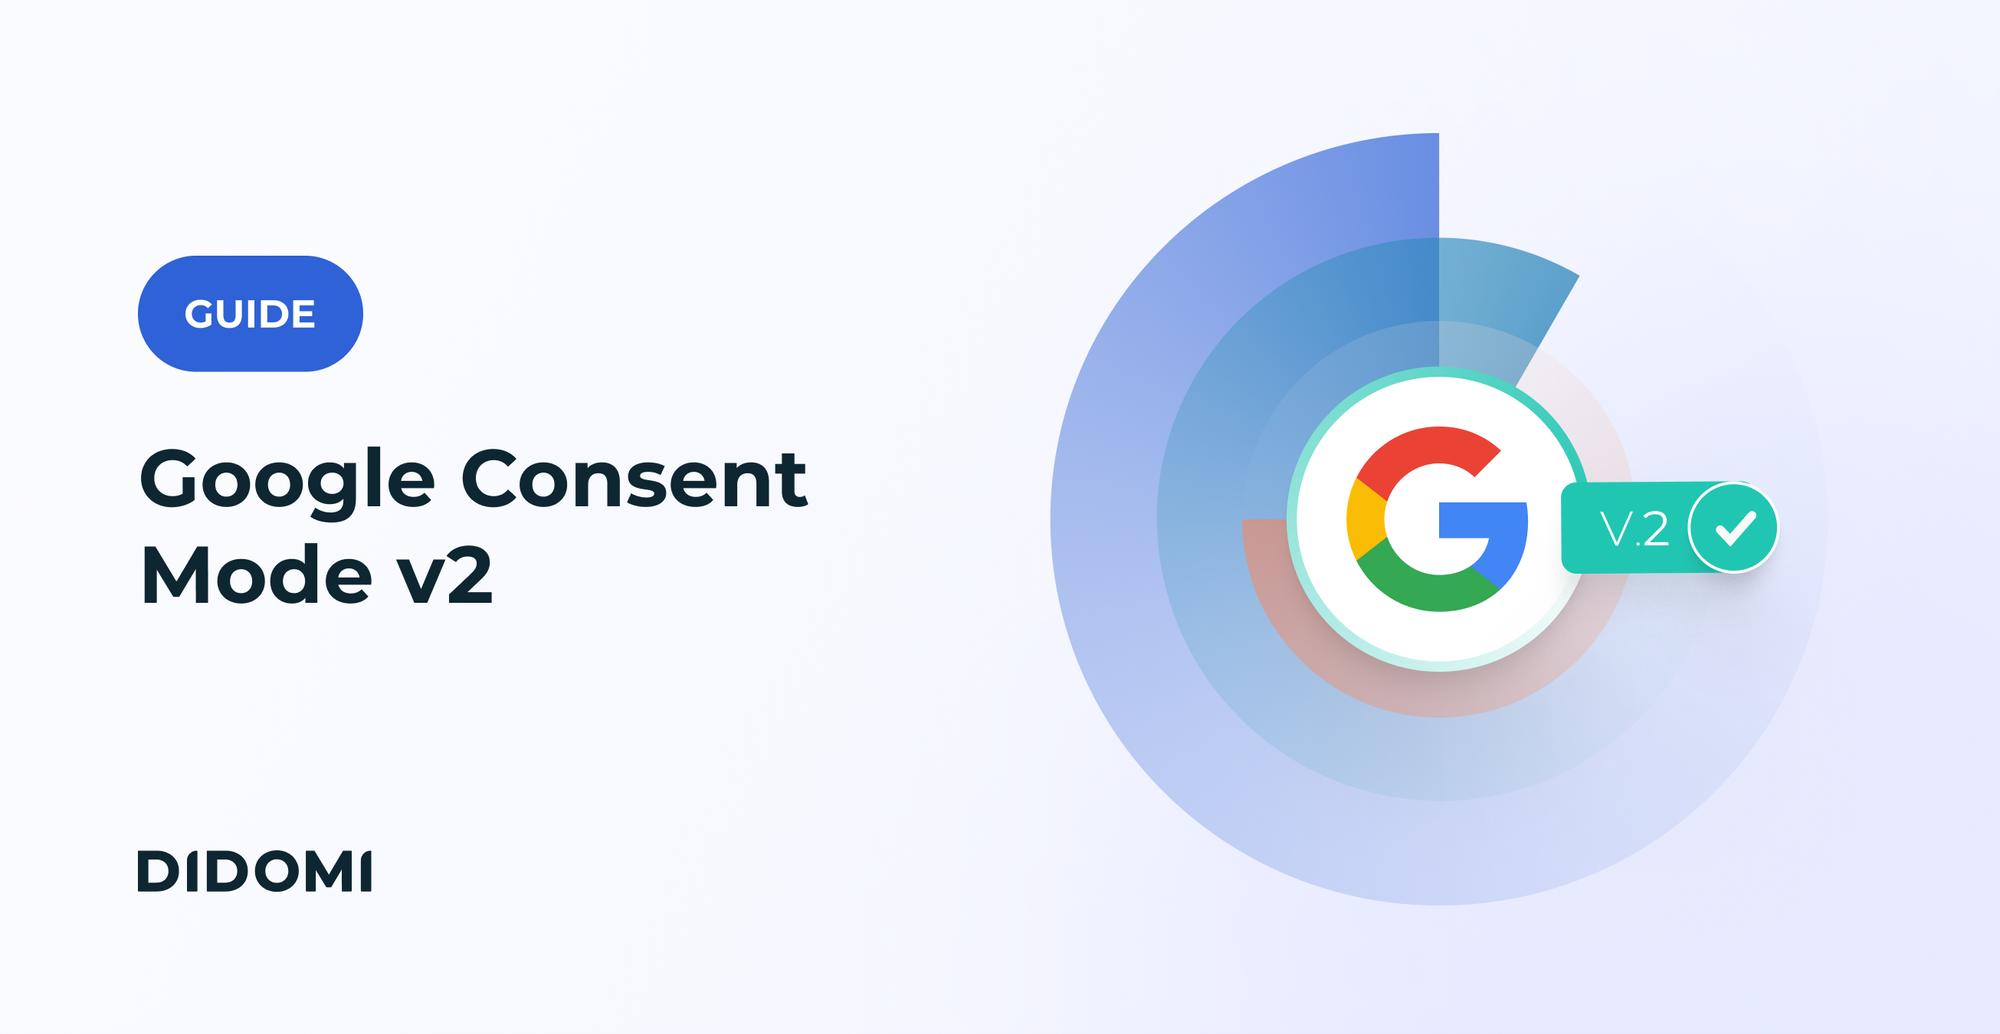 Sur le côté droit de l'image, le logo de Google accompagné de la mention "V2". À gauche, un badge indiquant "Guide" avec le titre "Google Consent Mode V2" en caractères gras.